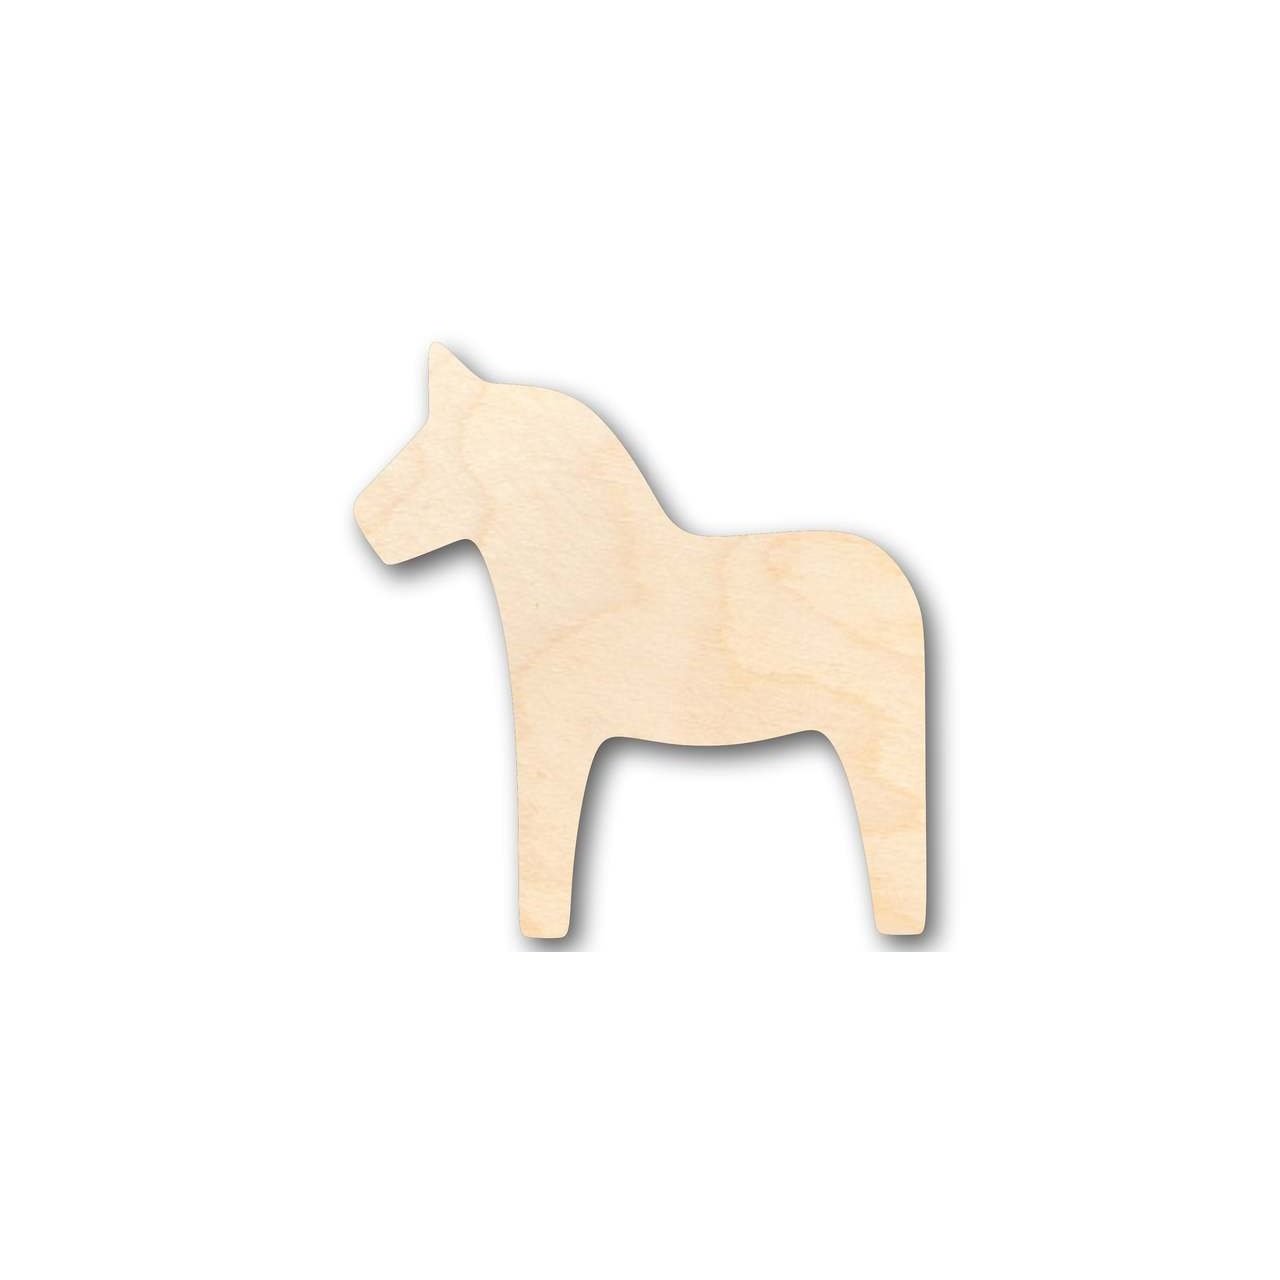 Unfinished Wooden Dala Horse Shape - Animal - Craft - up to 24